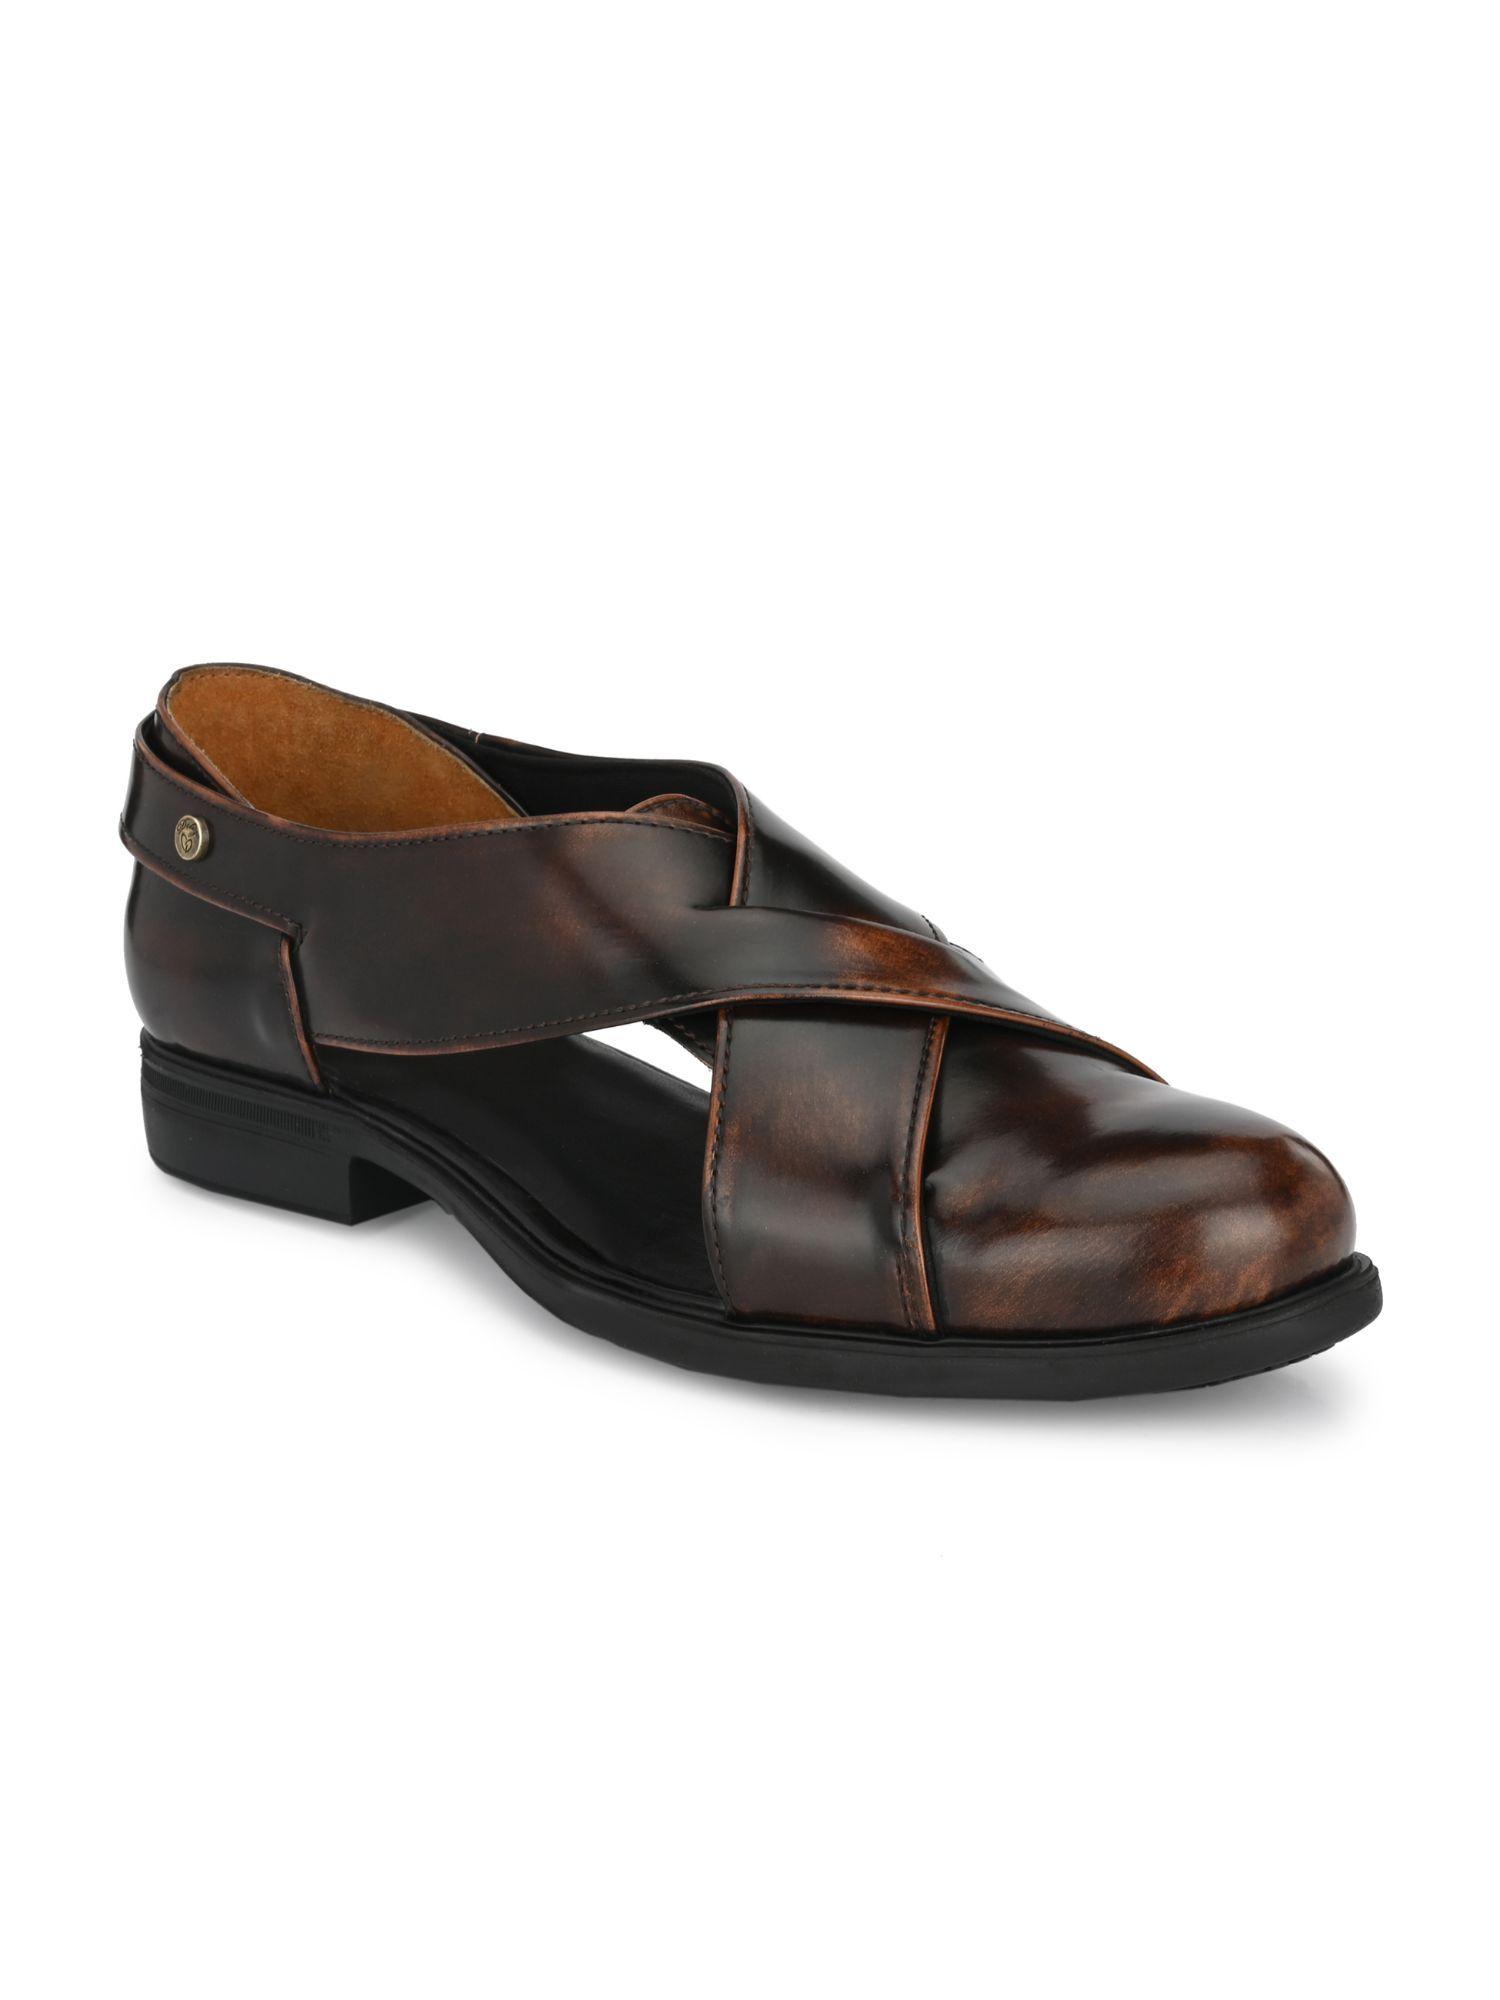 Mens Brown Roman Casual Sandals